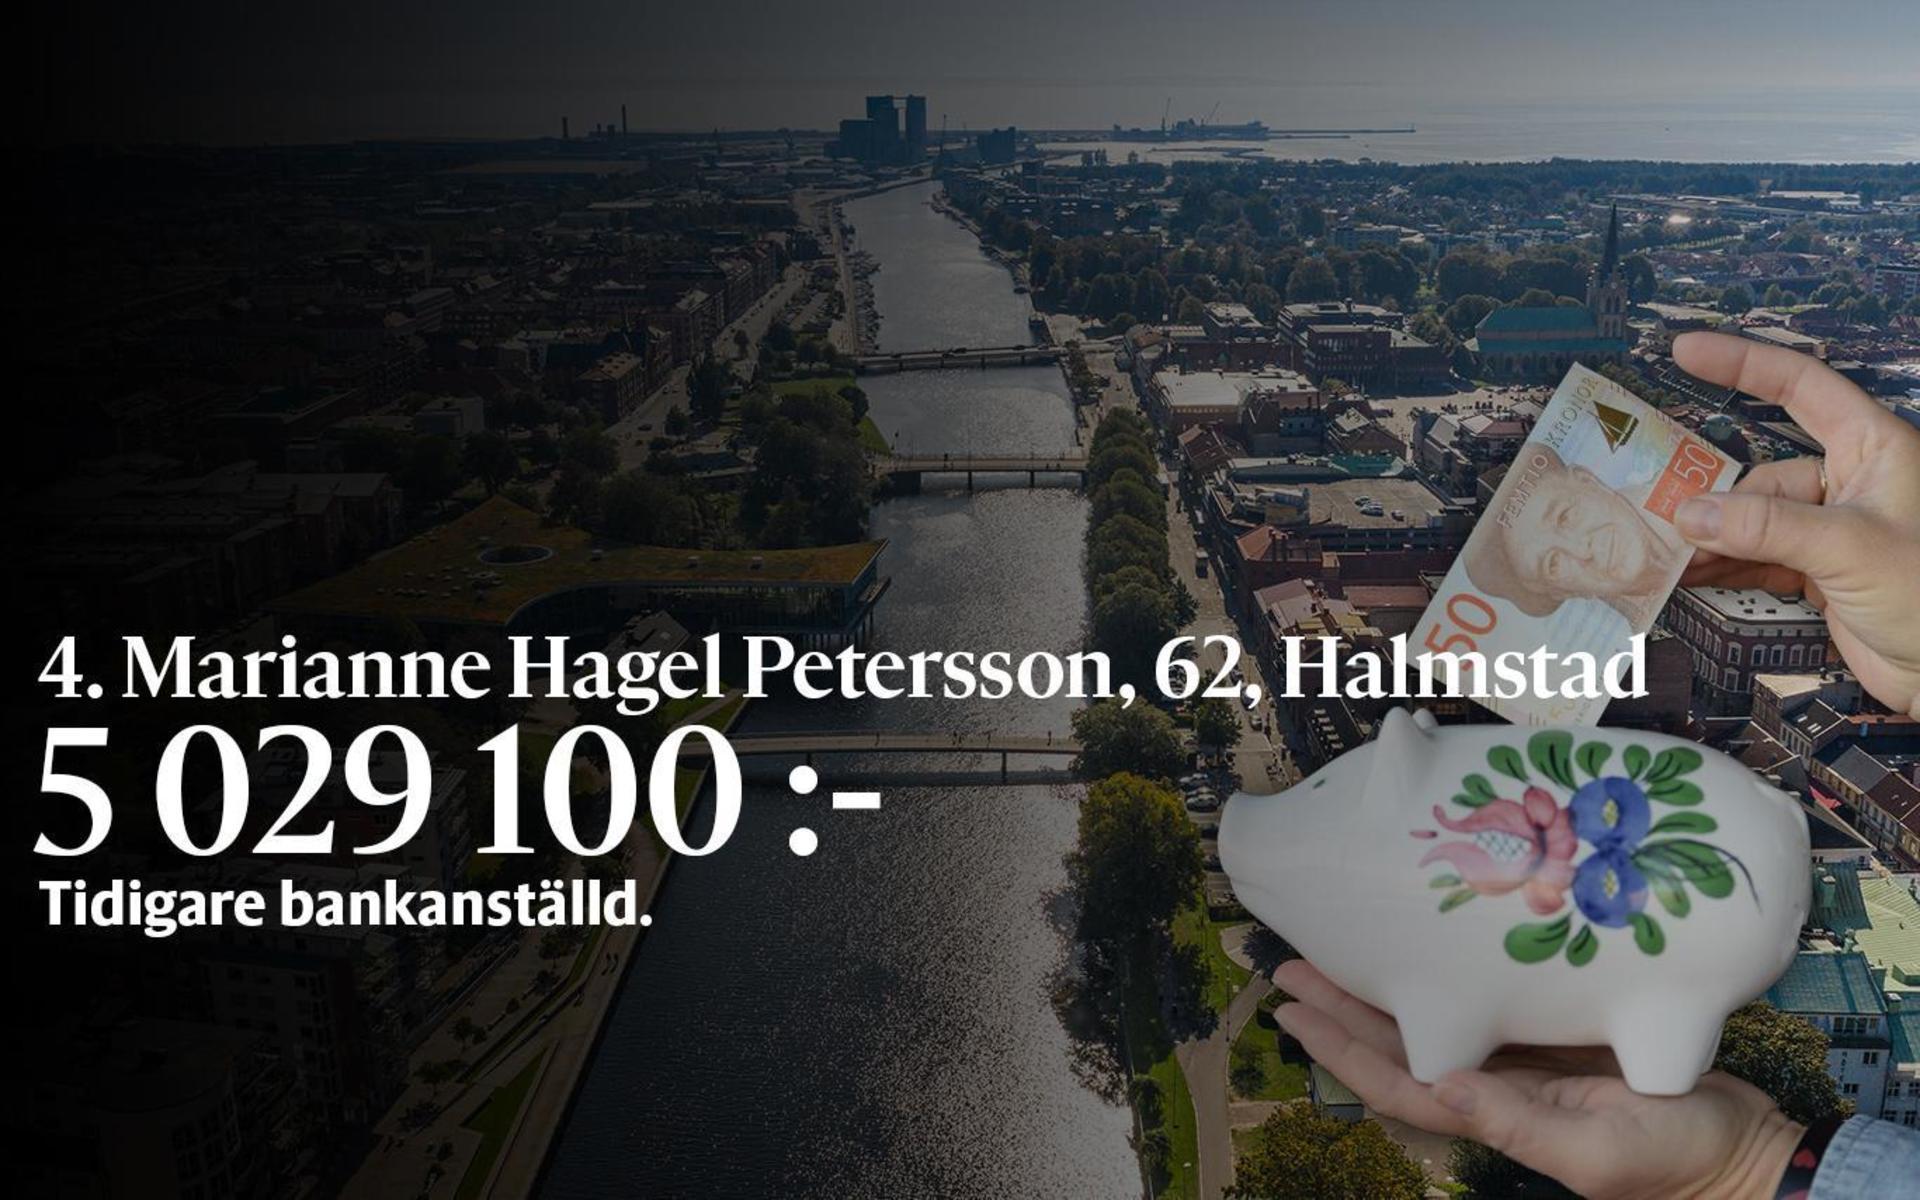 4. Marianne Hagel Petersson, fastställd förvärvsinkomst på 5 029 100 kronor och inkomst av kapital på 12 118 kronor placerar henne på plats 48 i den totala inkomstligan i Halmstad.